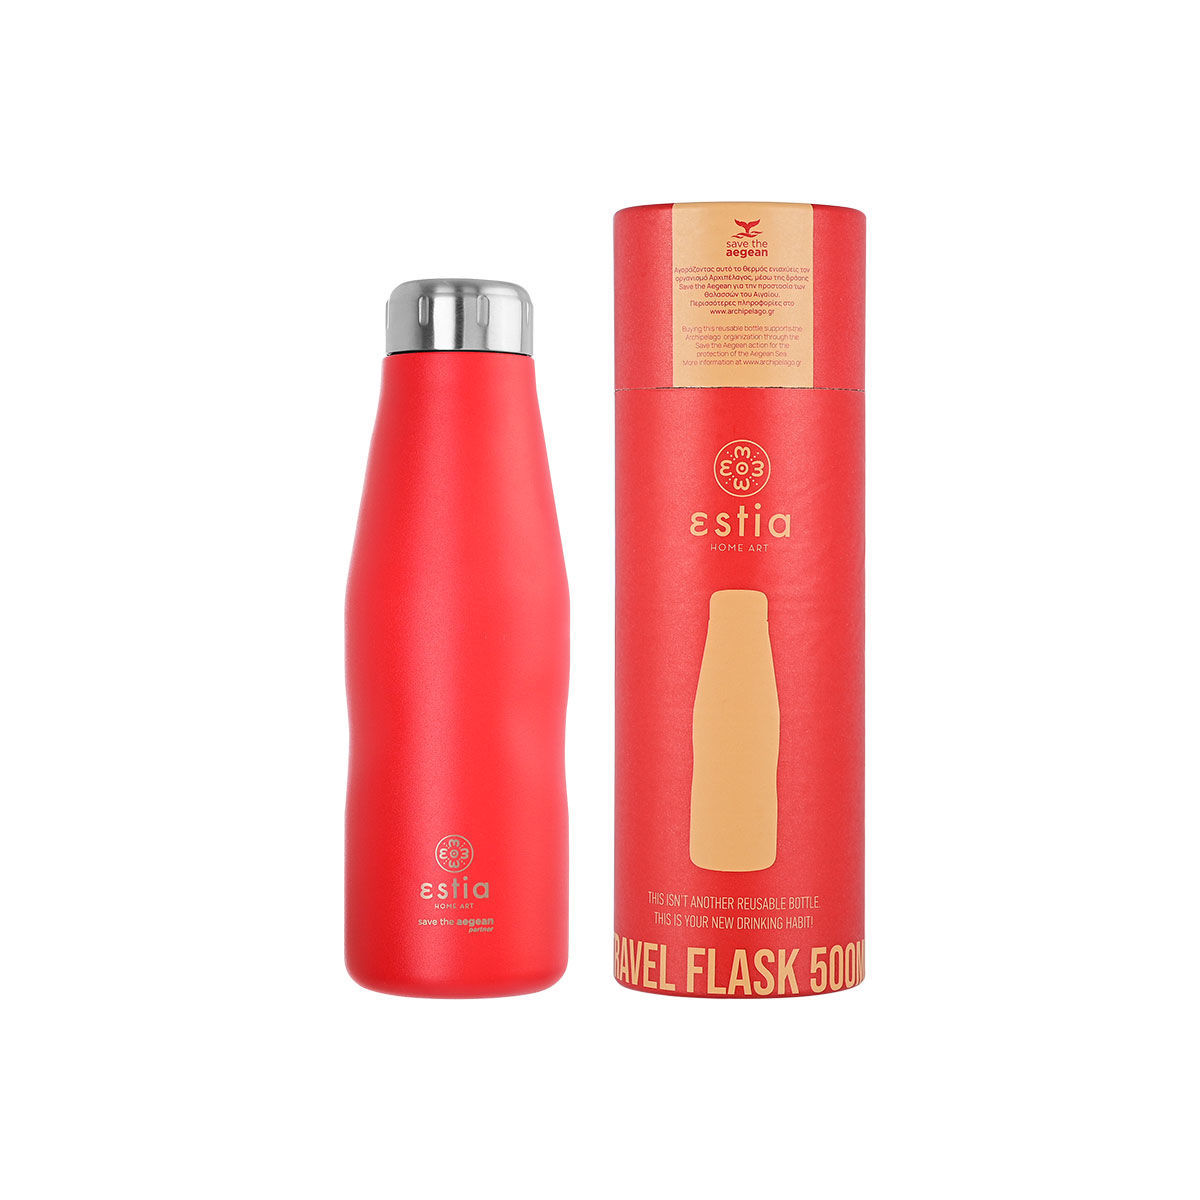 Θερμός-Μπουκάλι Ανοξείδωτο Scarlet Red Flask Save The Aegean Estia 500ml-7x7x22,3εκ. 01-8543 (Υλικό: Ανοξείδωτο, Χρώμα: Κόκκινο) – estia – 01-8543